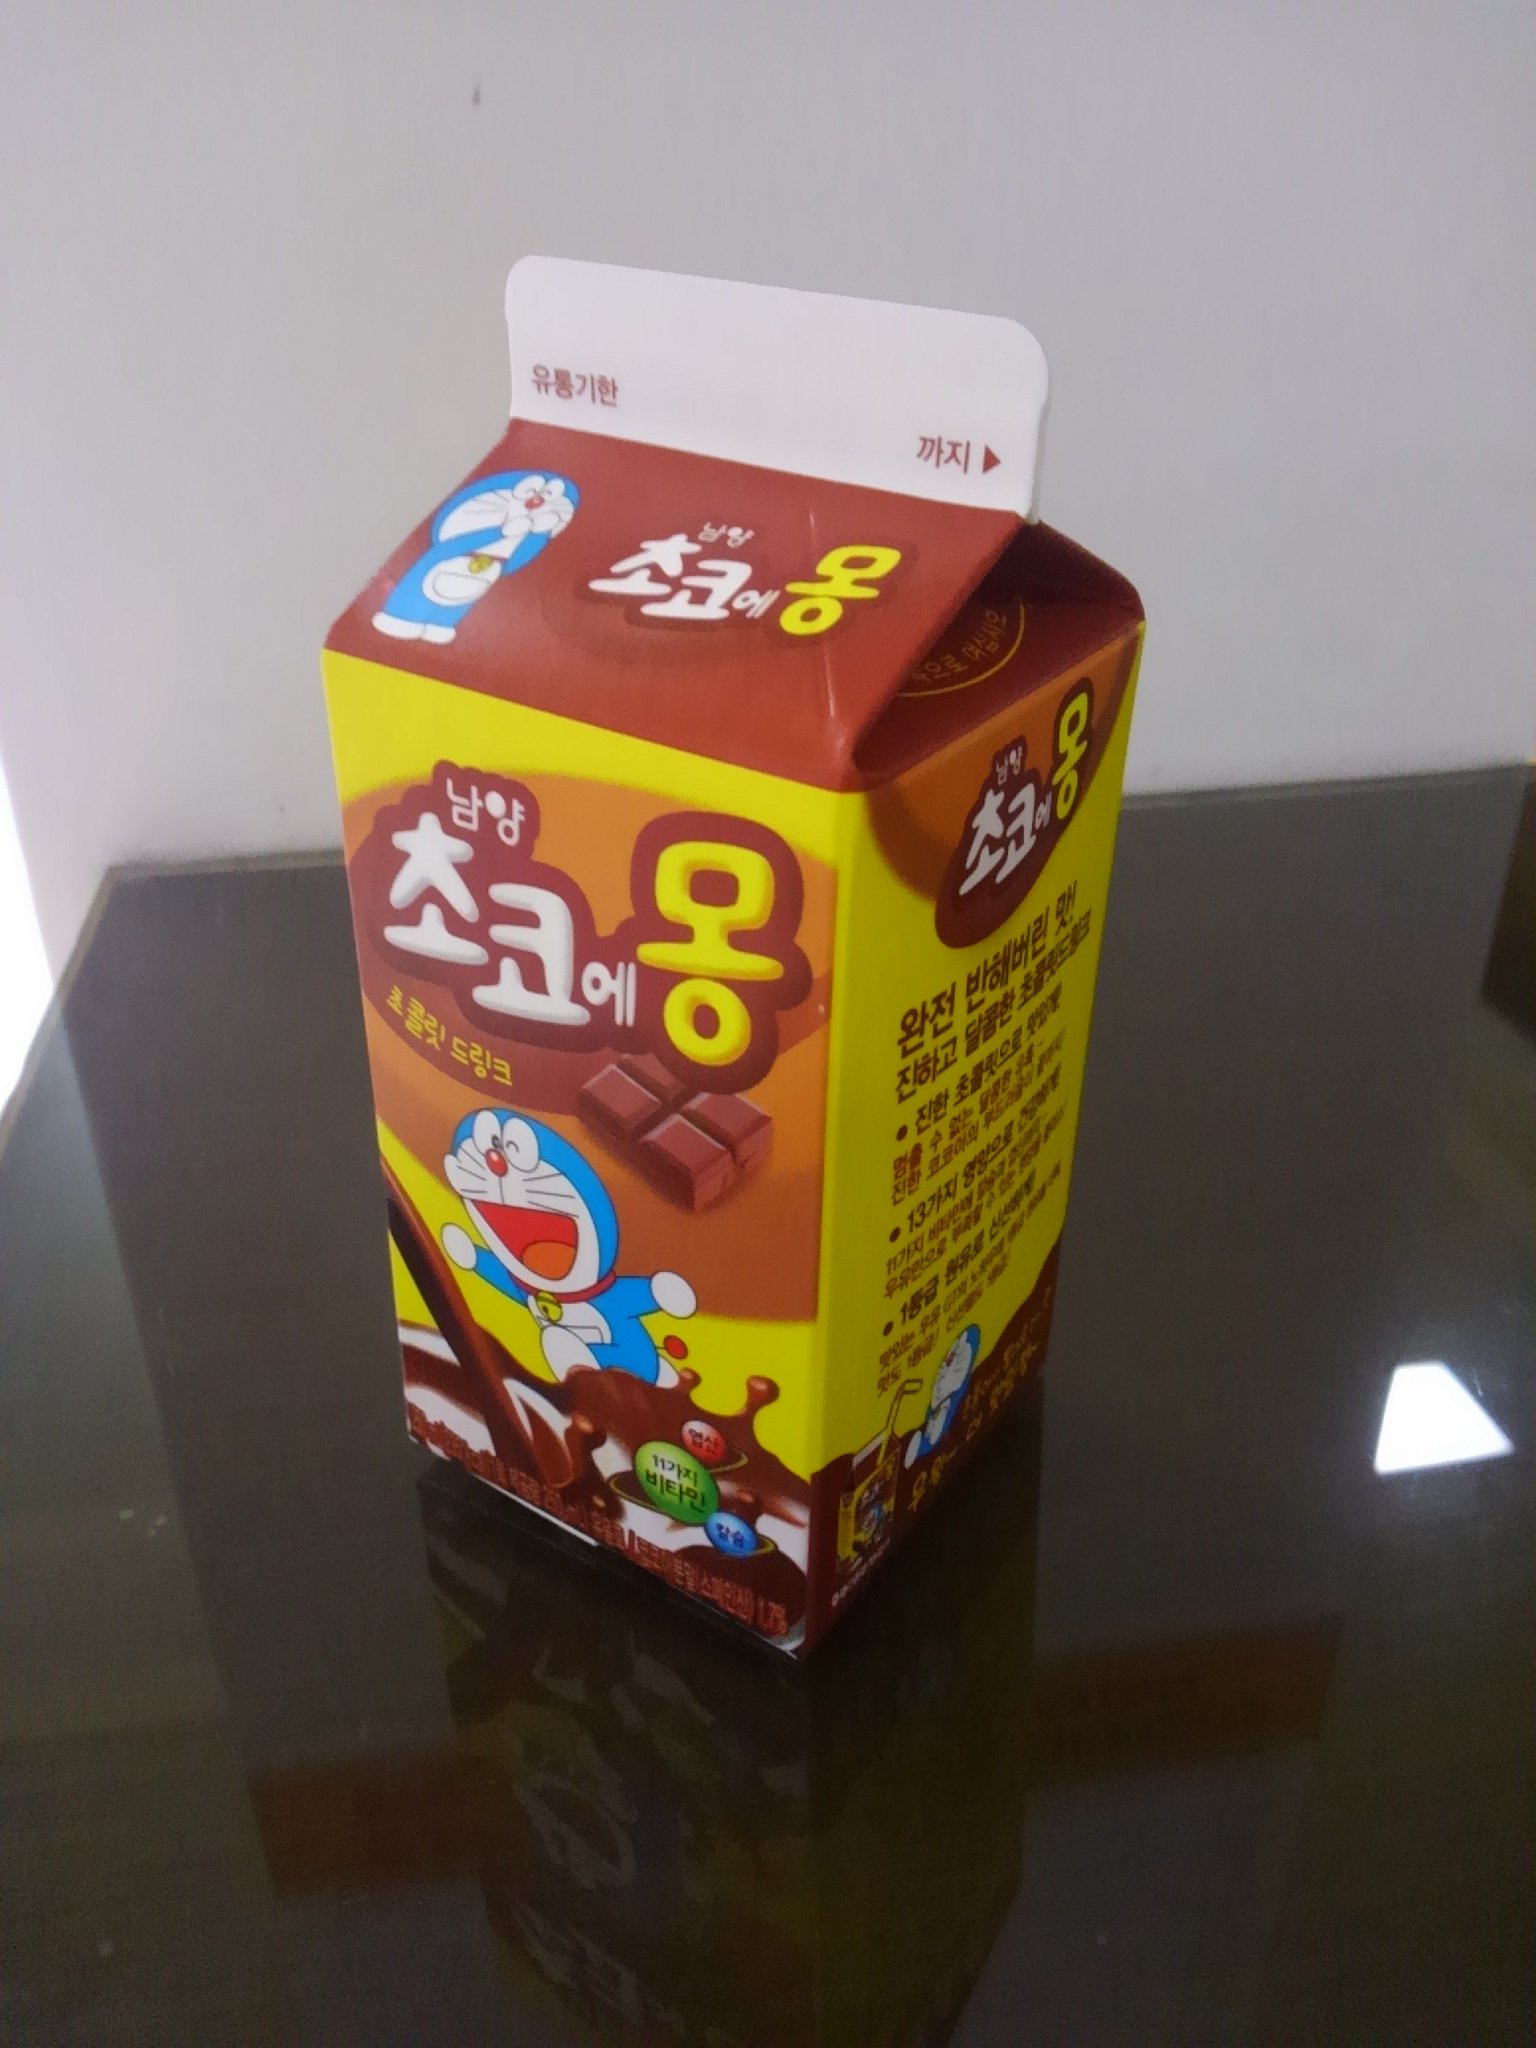 むぎ 韓国を発つ前に 金浦空港駅のgs25で買ったチョコえもん ドラえもんがキャラのチョコ飲料 韓国では親しまれている飲み物